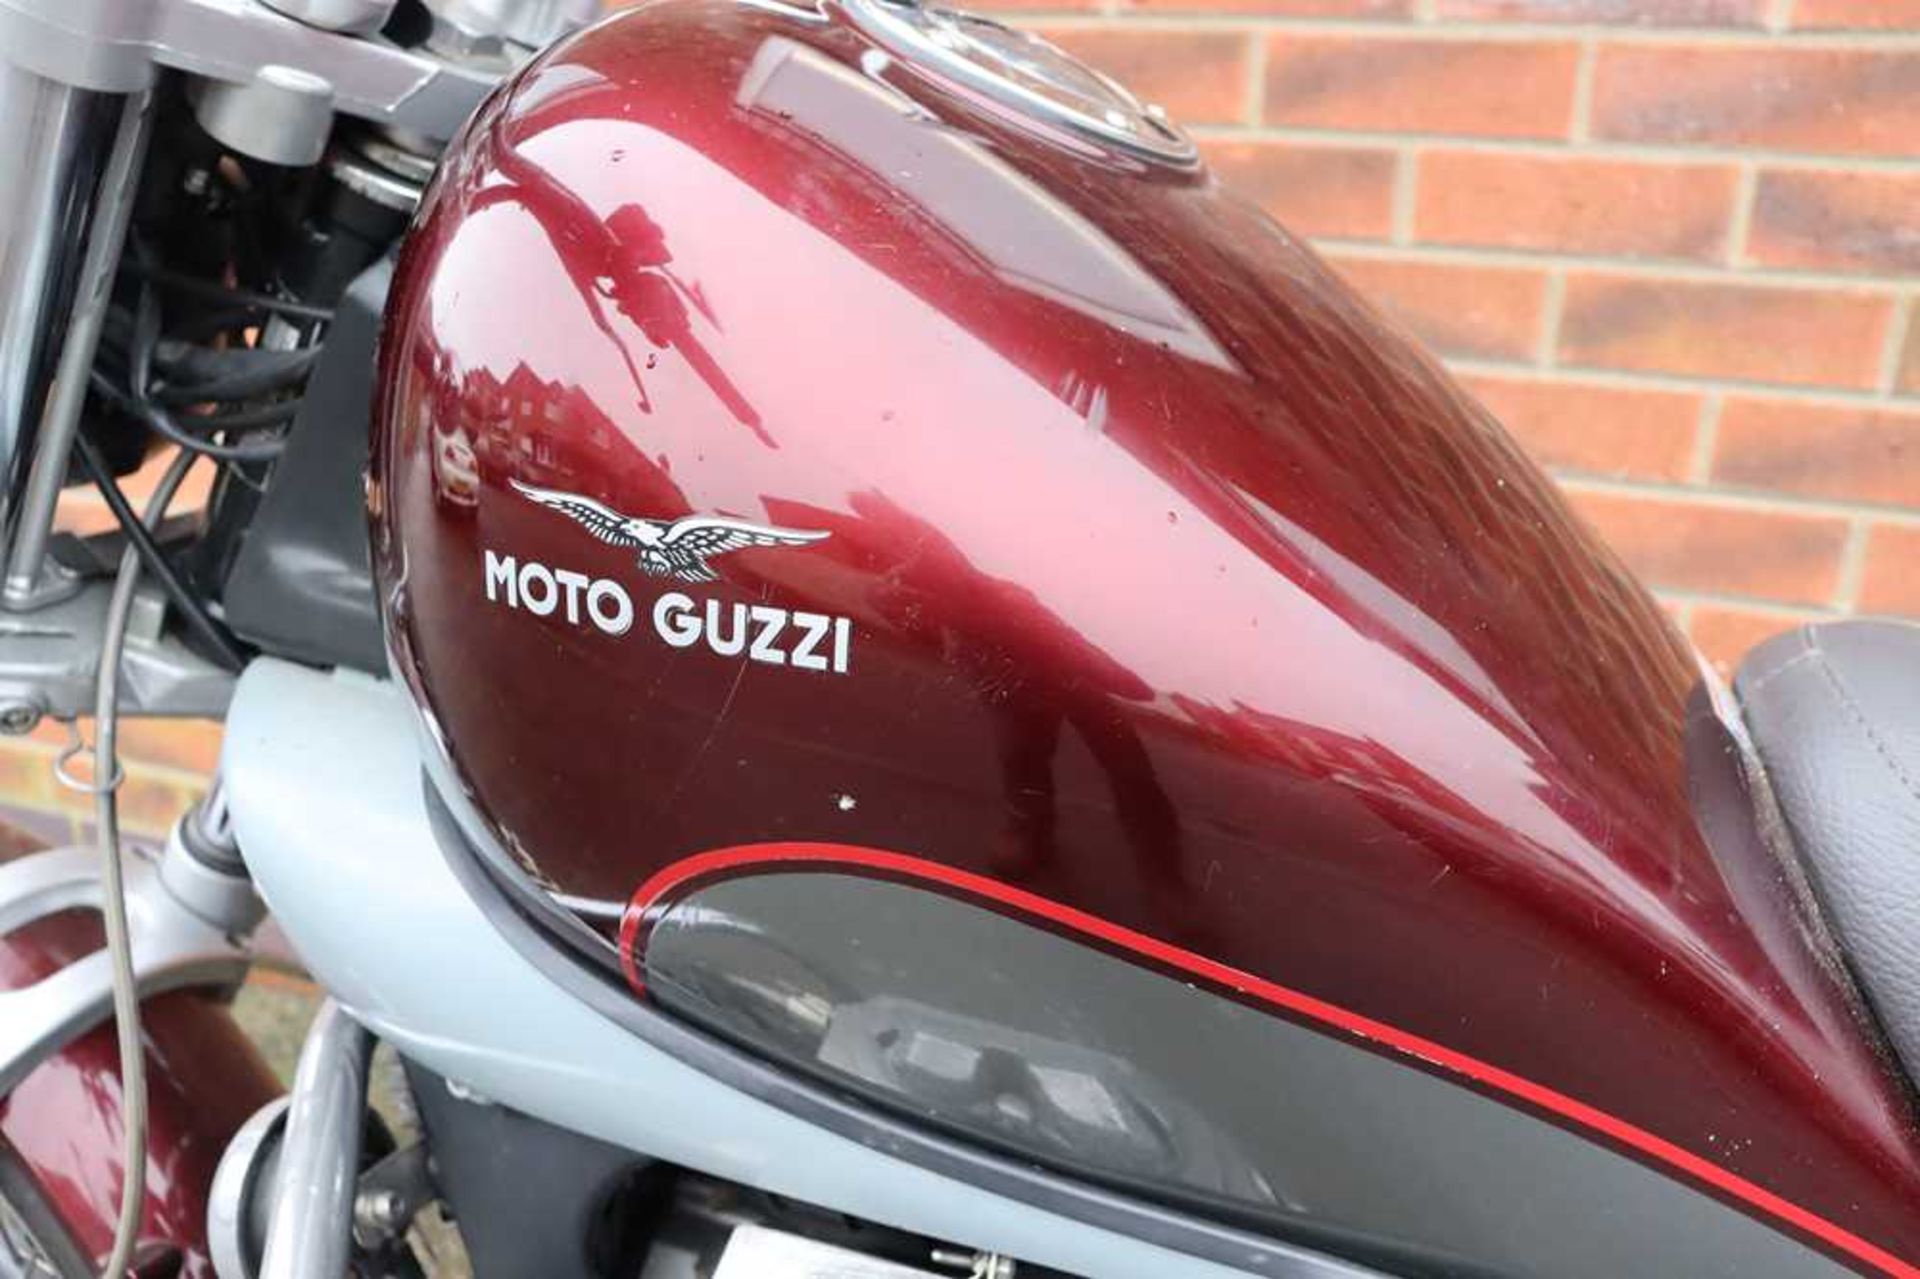 2004 Moto Guzzi Nevada Custom model with backrest and engine bars - Image 7 of 42